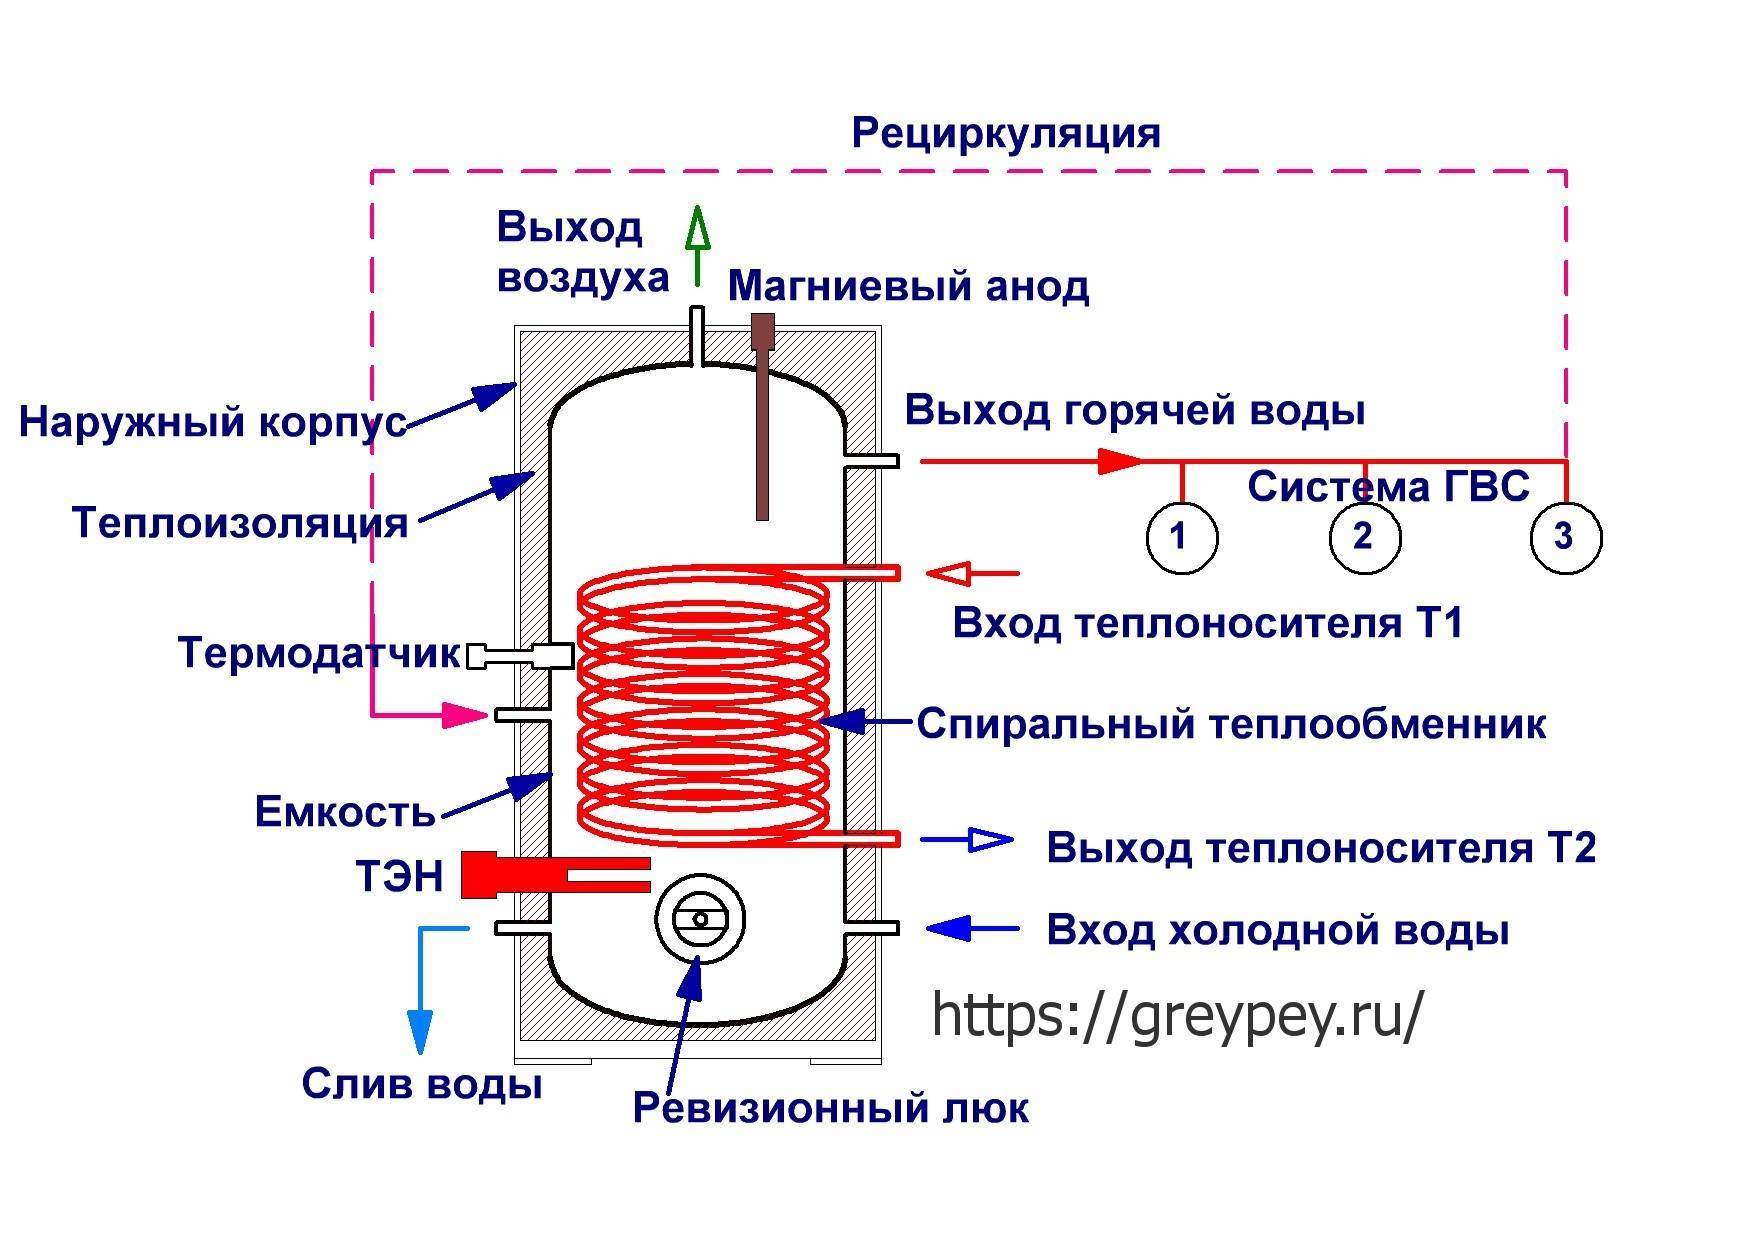 Мощность проточного и накопительного водонагревателя